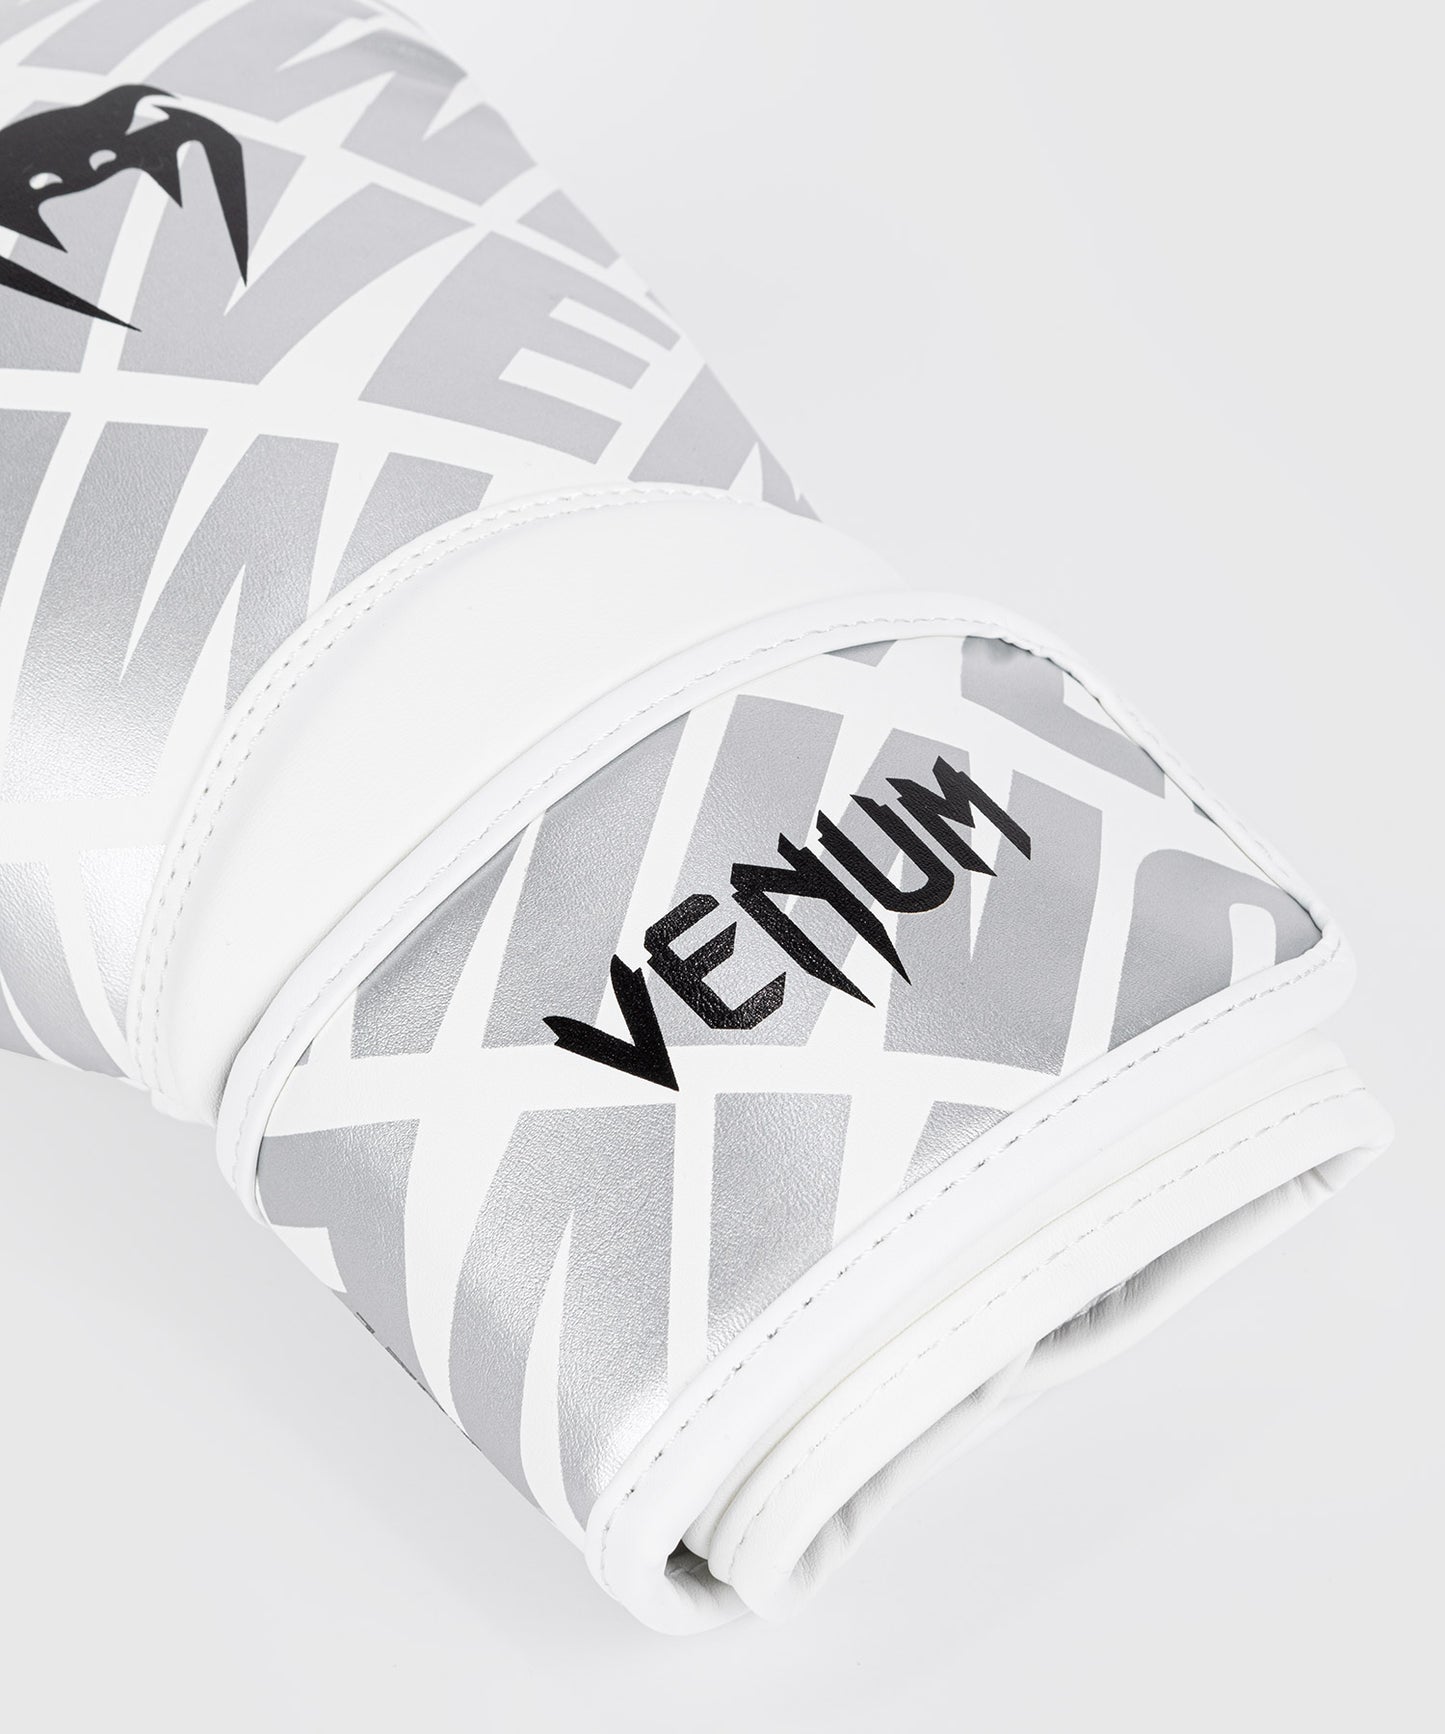 Venum Contender 1.5 XT Boxhandschuhe -Weiß/Silber